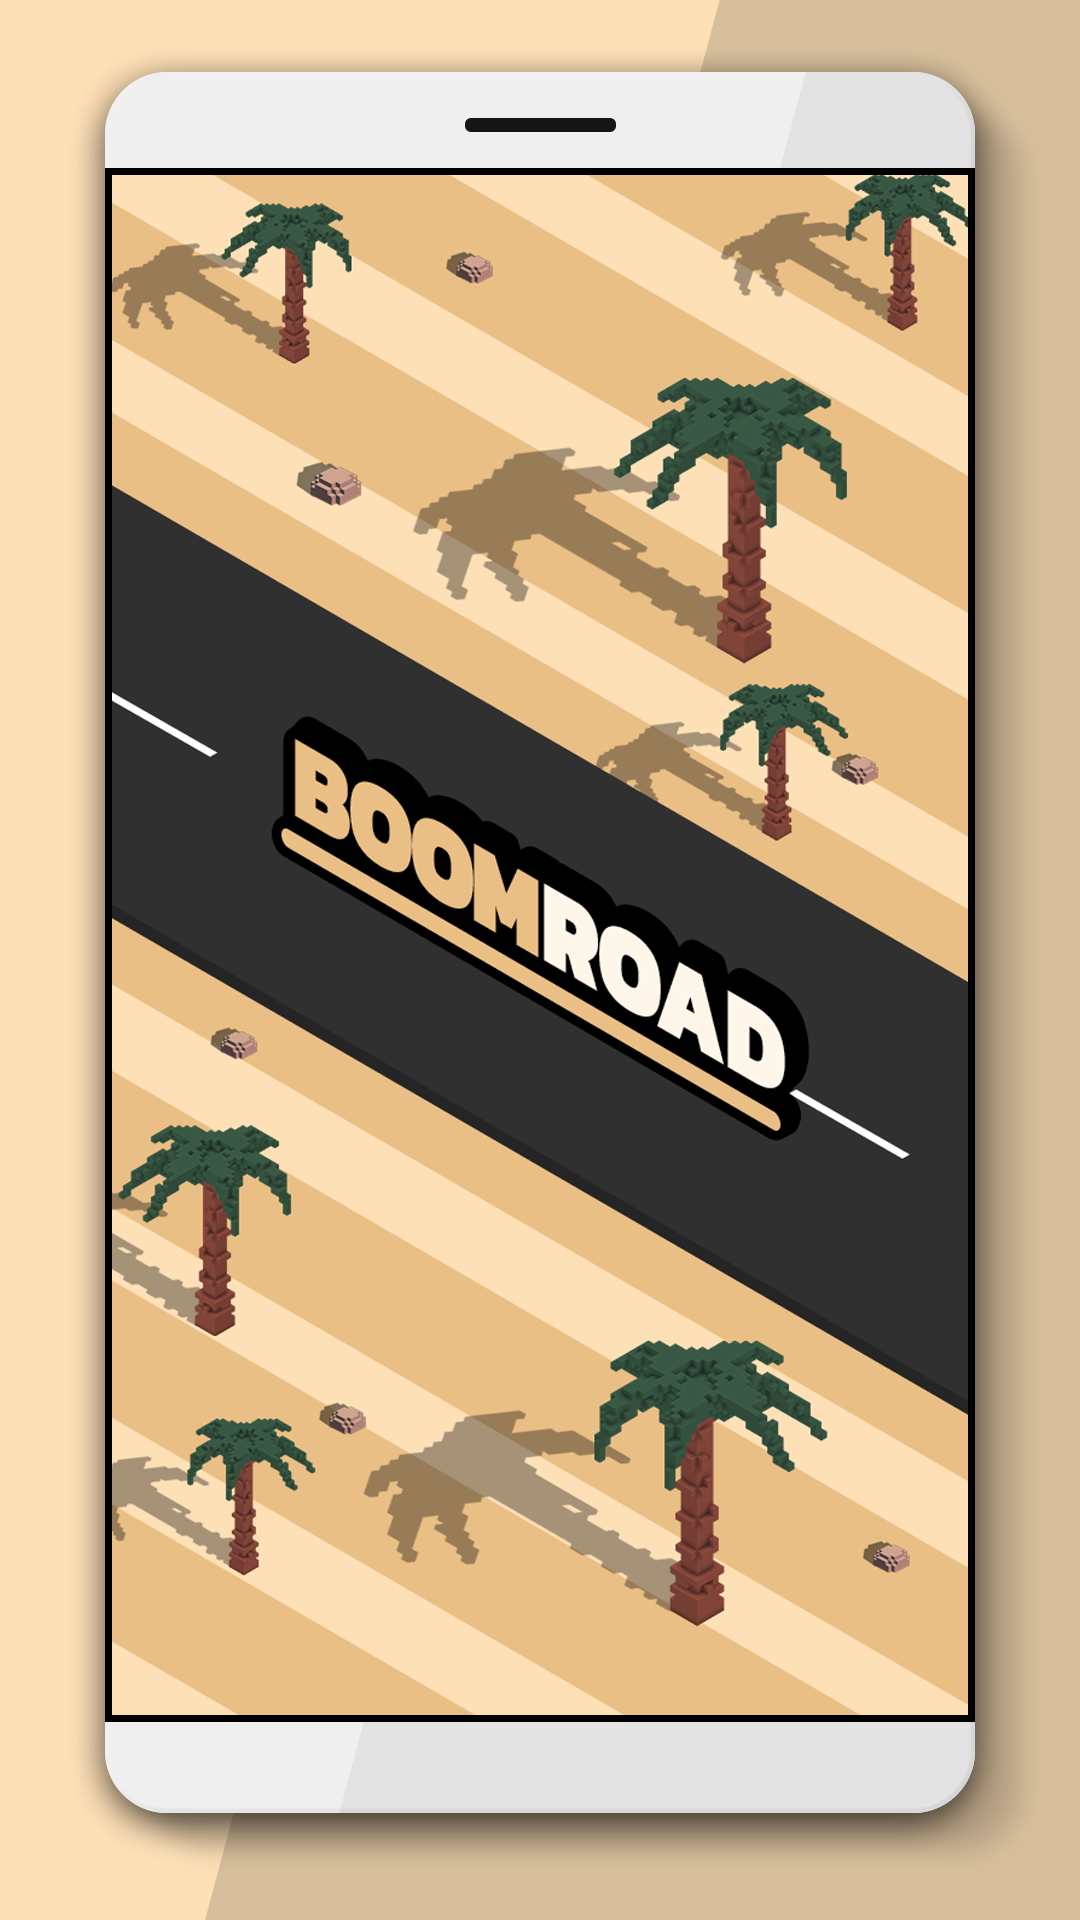 Screenshot 1 of Boom Road 3D езди и стреляй 2.01